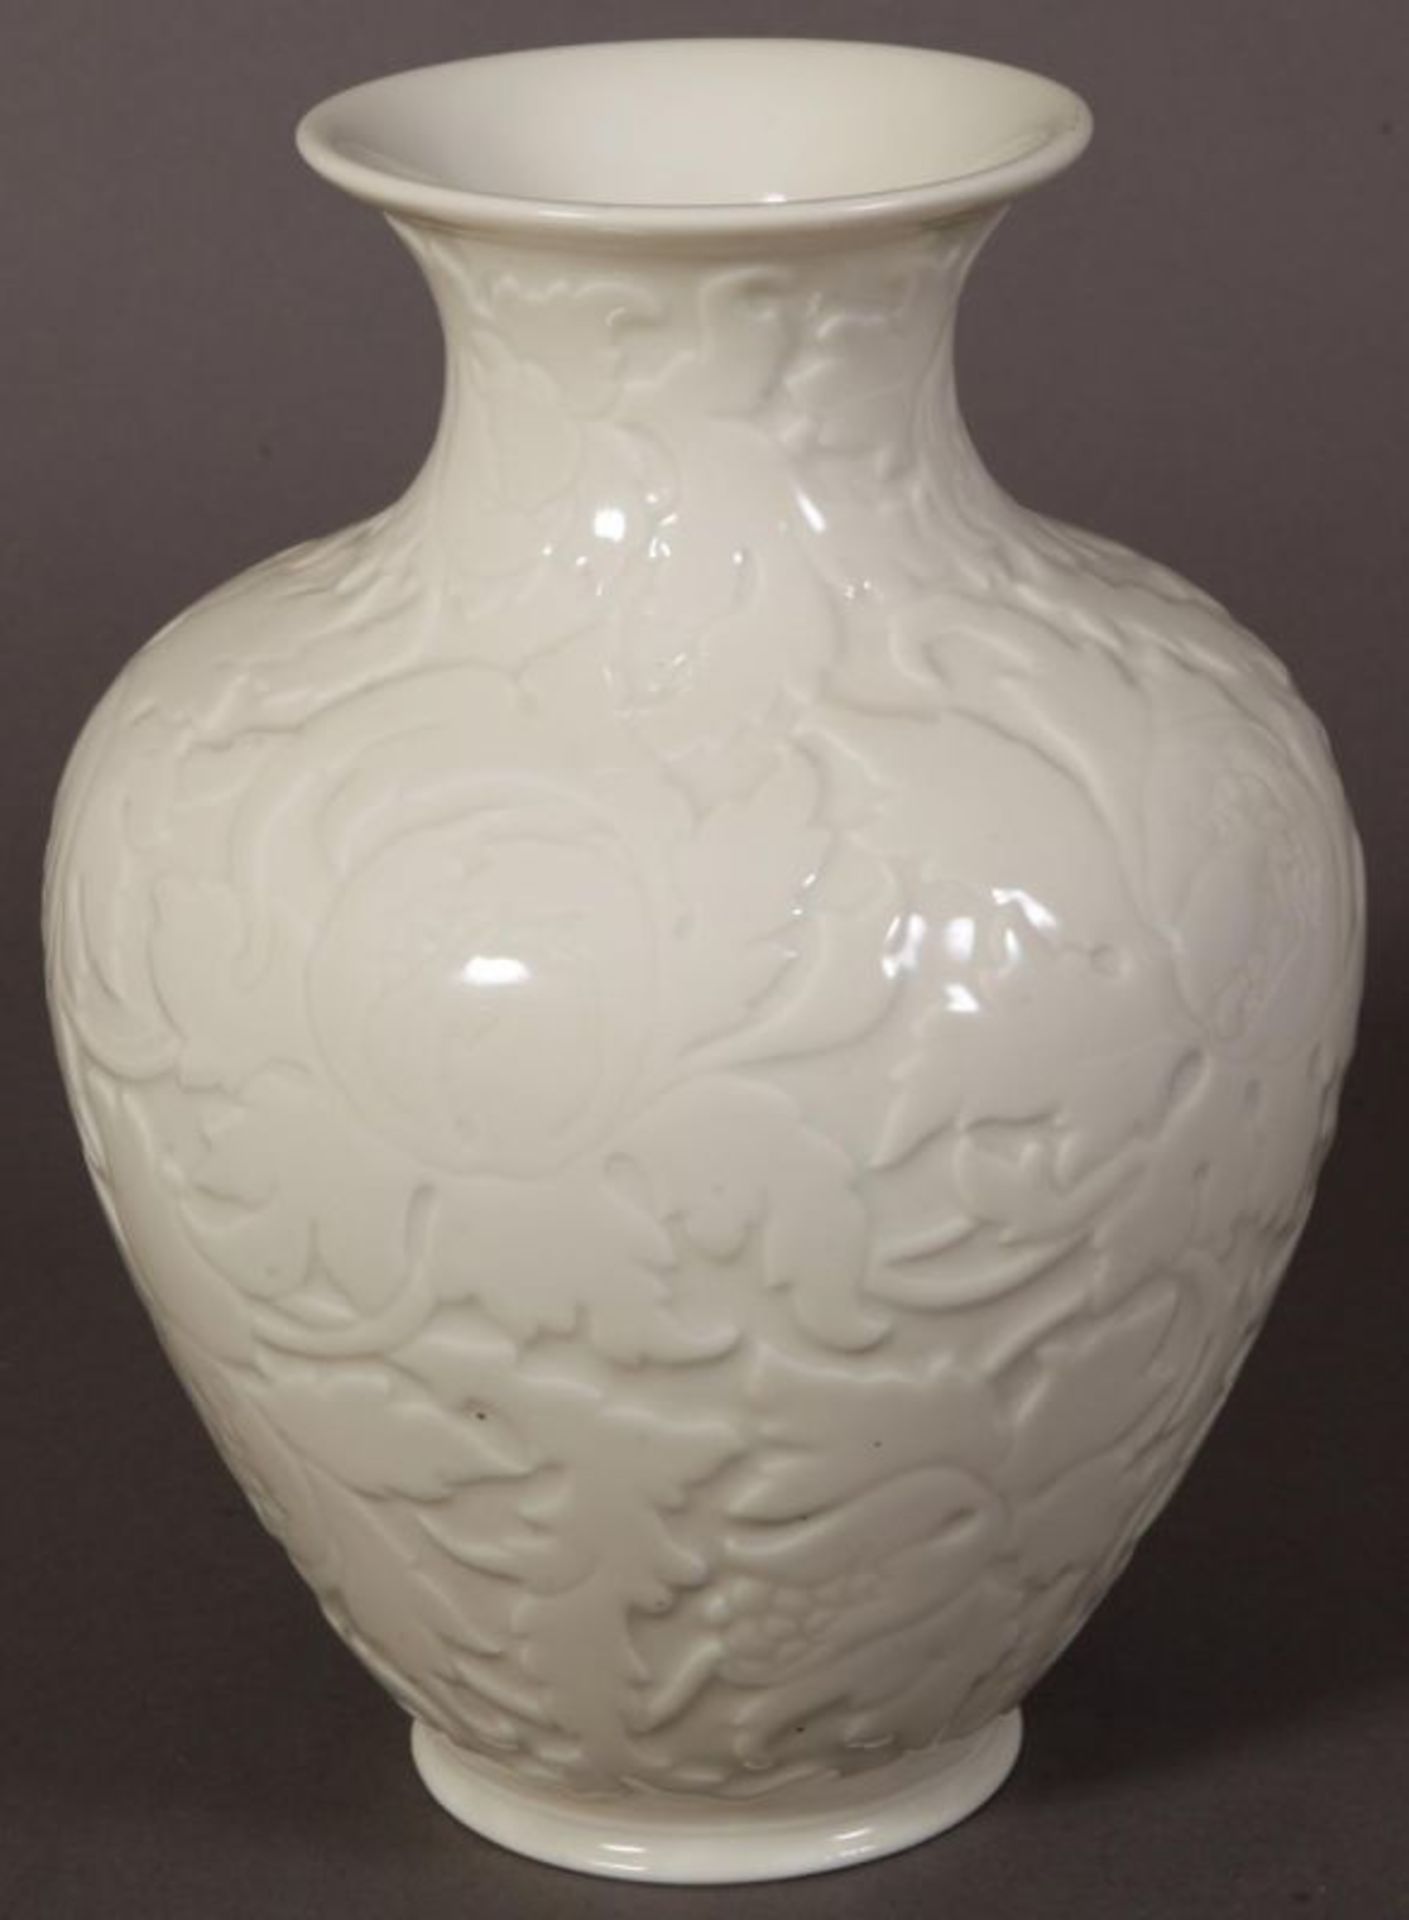 Bauchige "Rosenthal"-Vase, flächiger Floraldekor. Höhe 29 cm, Durchmesser 20 cm. - Image 4 of 6